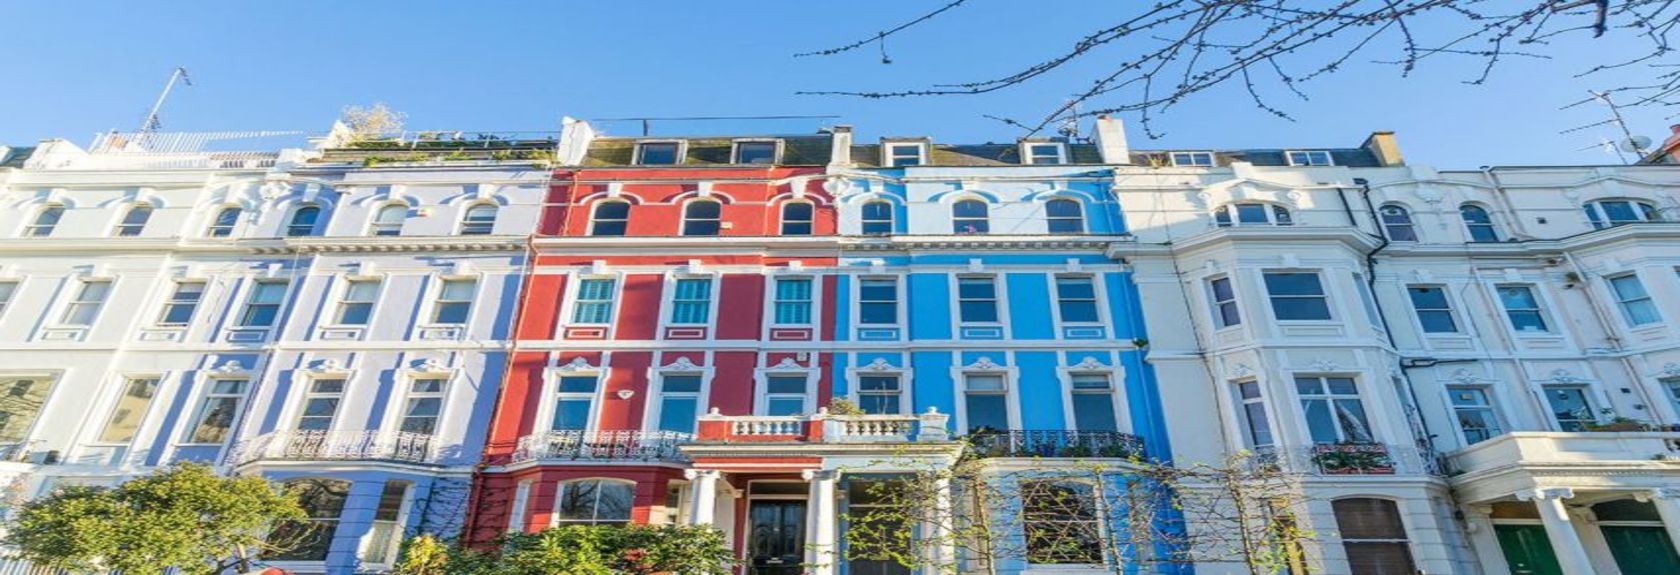 Notting Hill é conhecido como um dos bairros mais bonitos de Londres e é claro que é mais conhecido pelo filme 